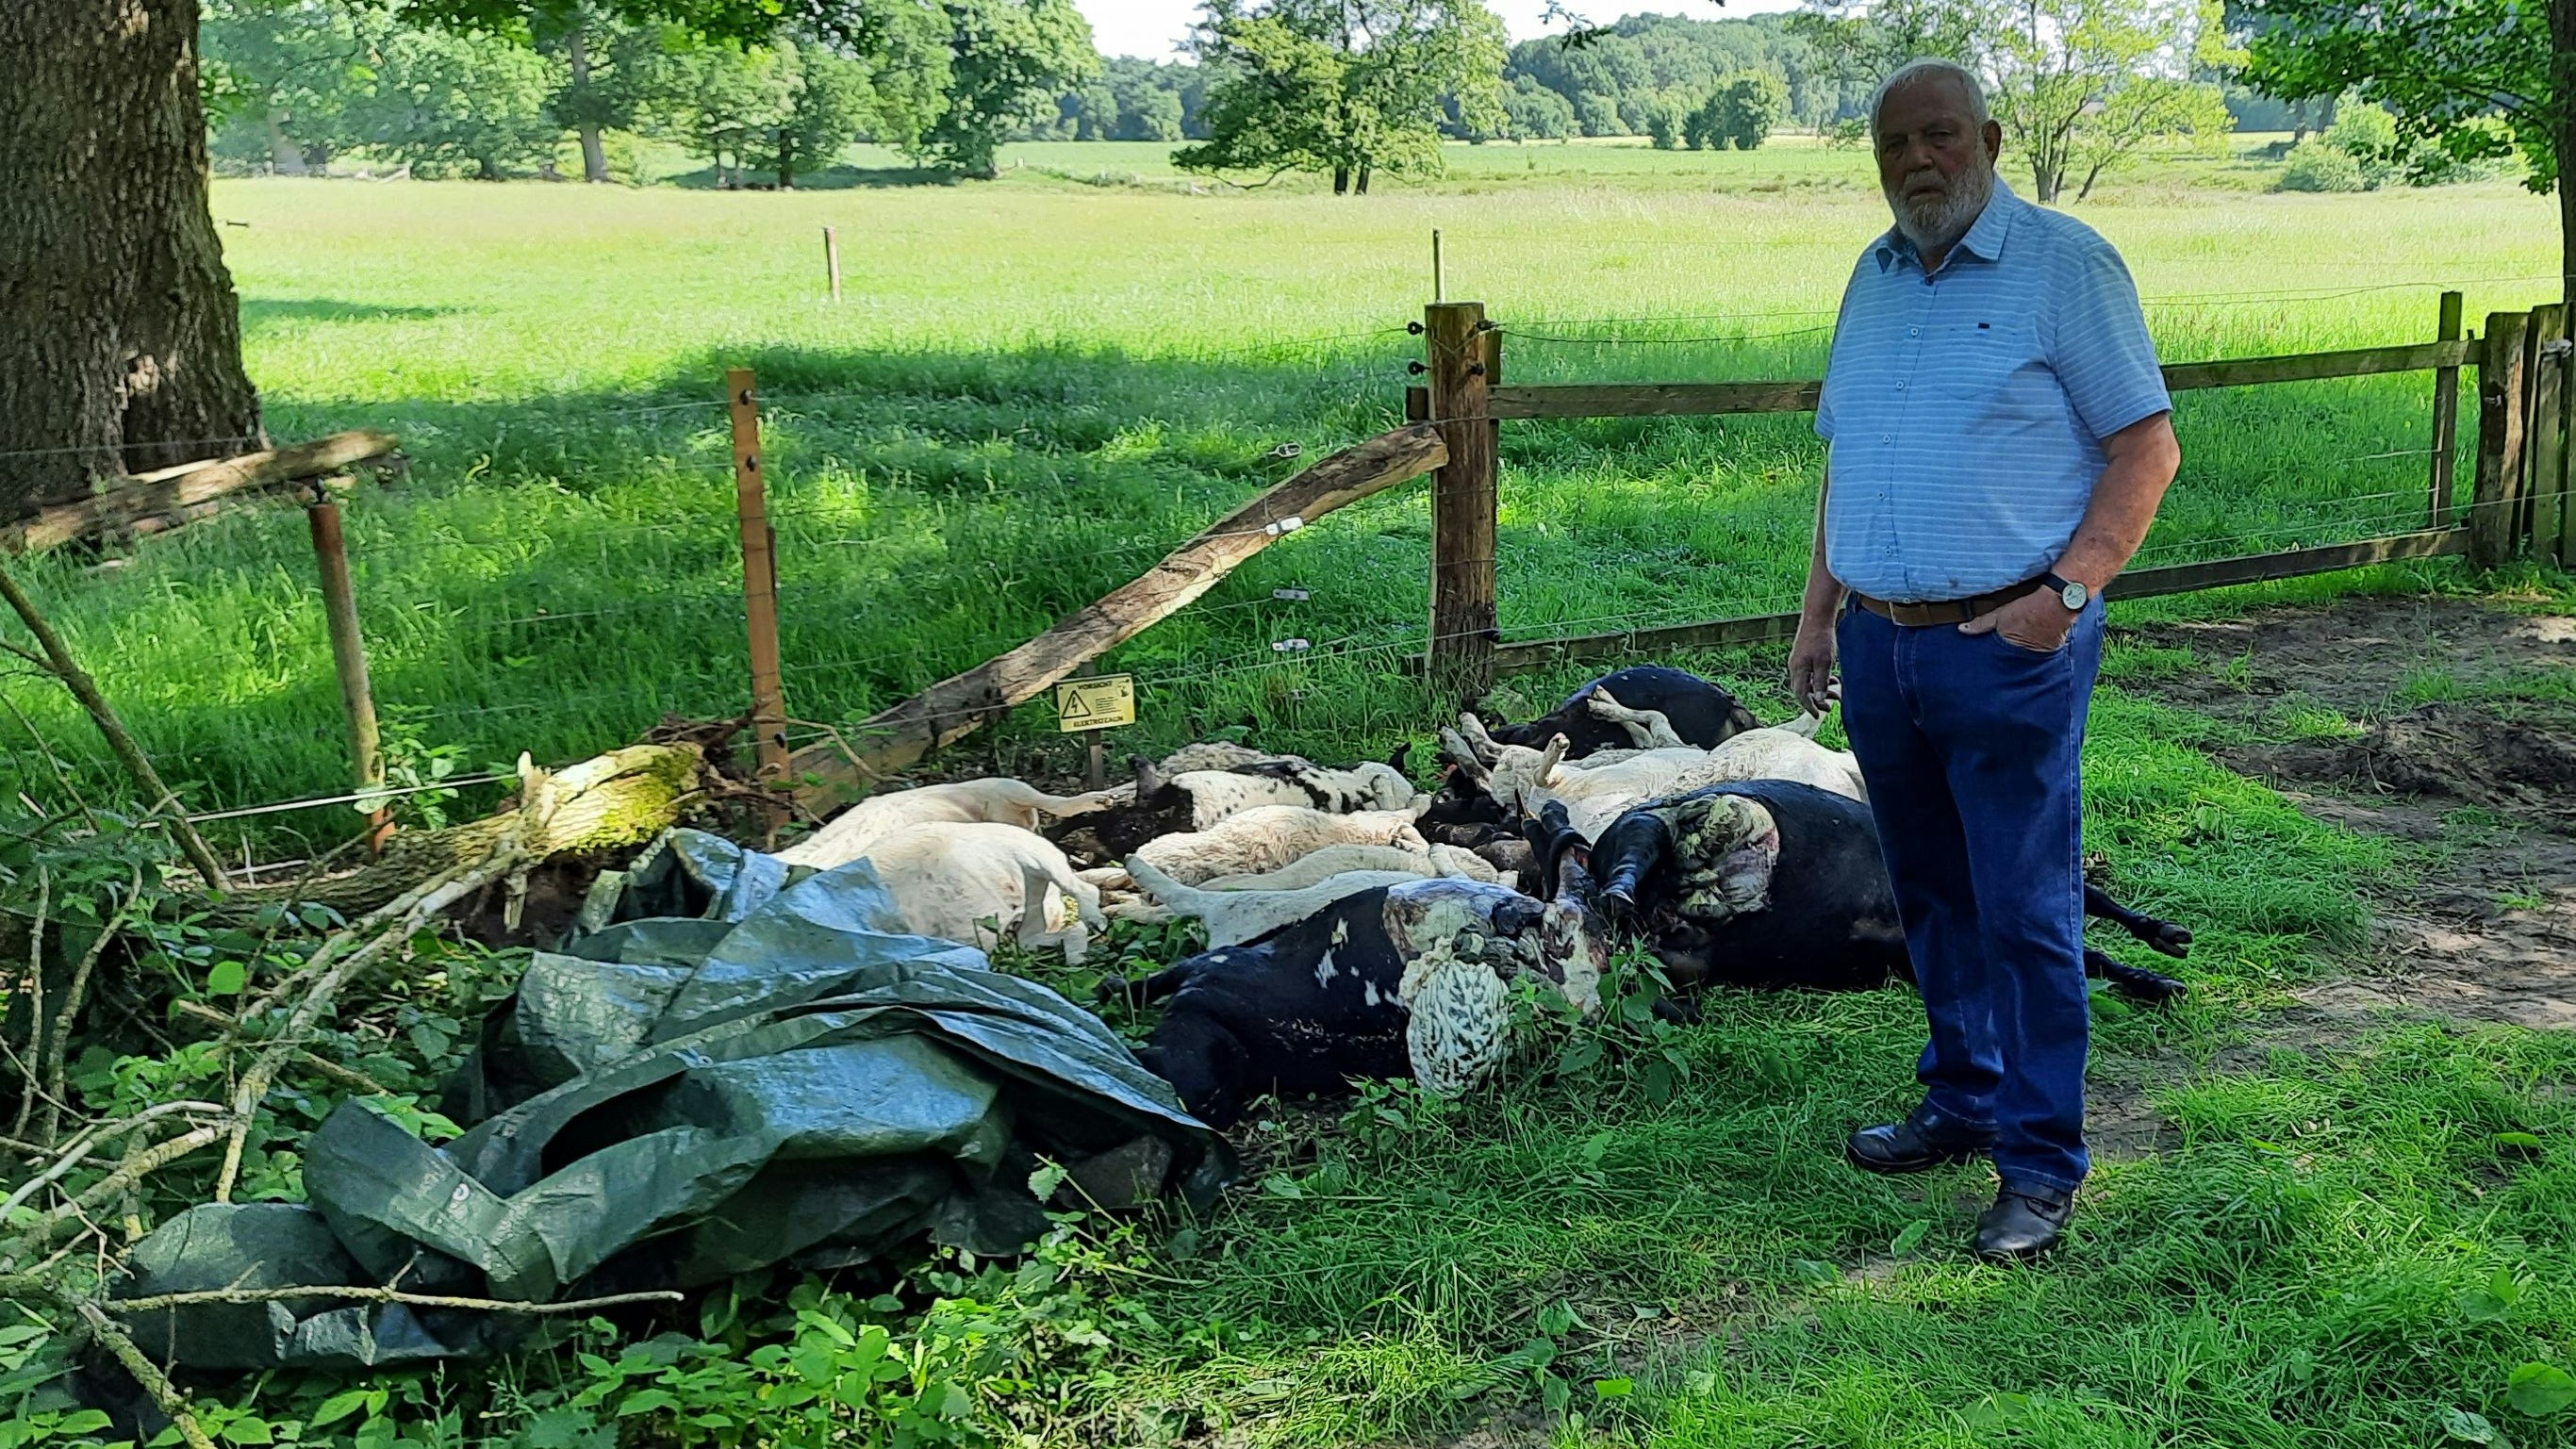 17 tote Schafe hat Franz Stammermann zu beklagen. Drei Lämmer werden noch vermisst.&nbsp; &nbsp;Fotos: Stix